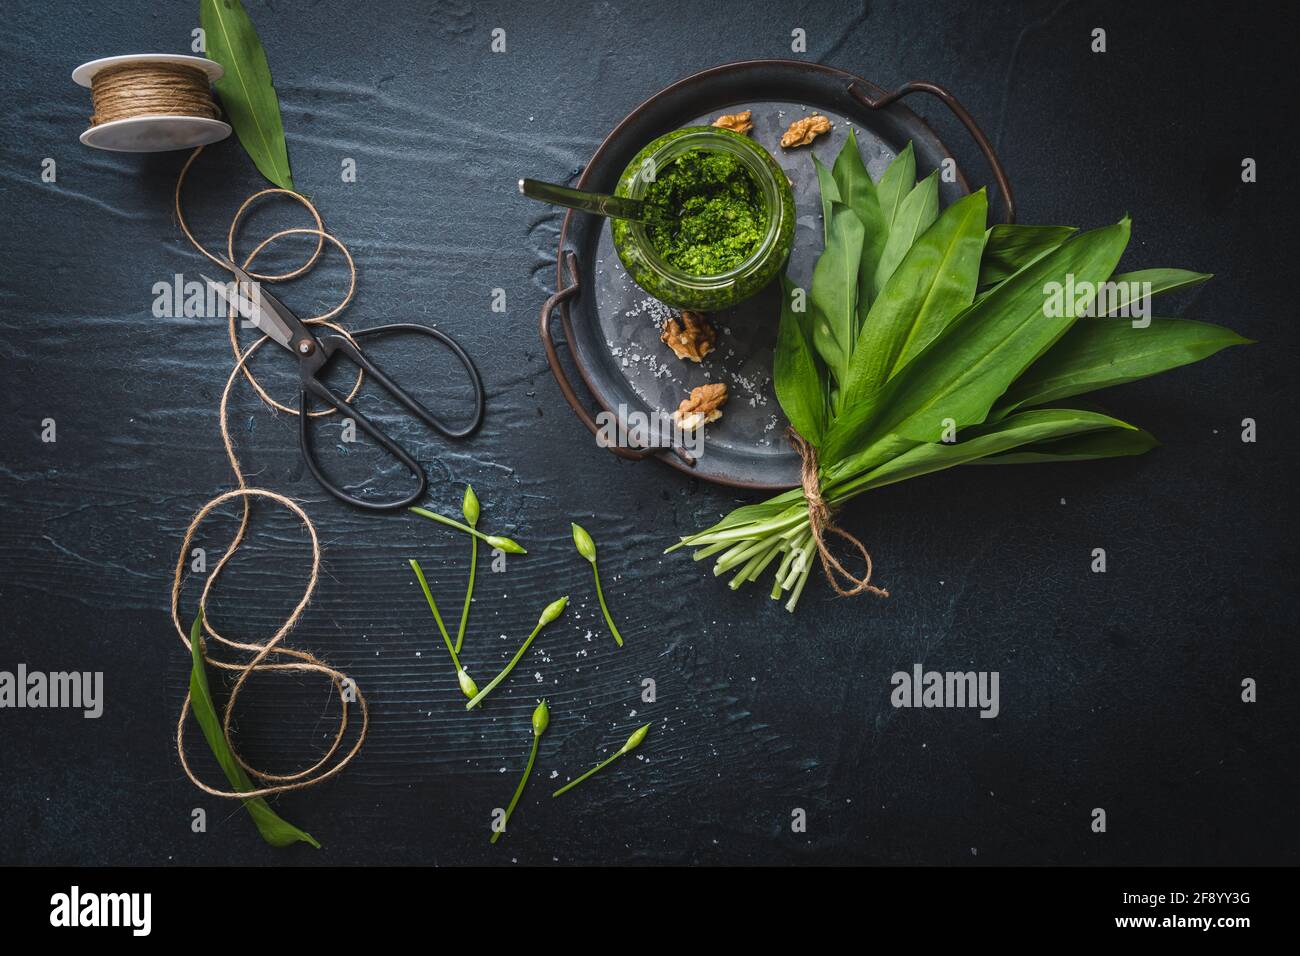 Pesto e noci di aglio selvatico fatti in casa su un vassoio di metallo, foglie di aglio selvatico, un nastro e forbici su sfondo nero Foto Stock